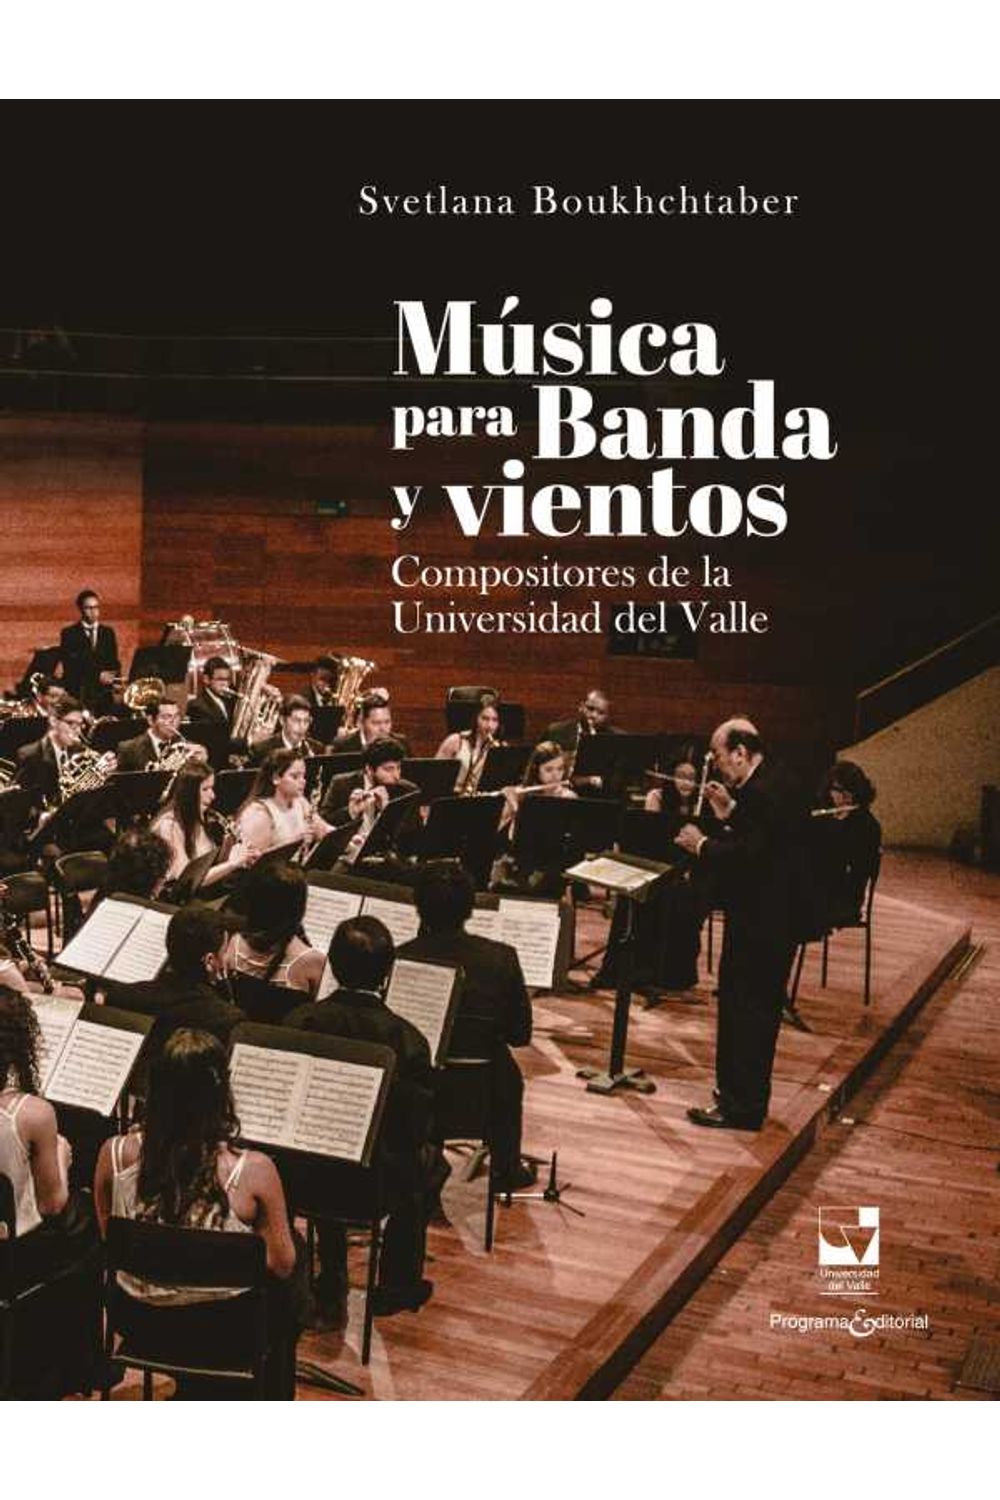 bw-muacutesica-para-banda-y-vientos-programa-editorial-universidad-del-valle-9790801631336